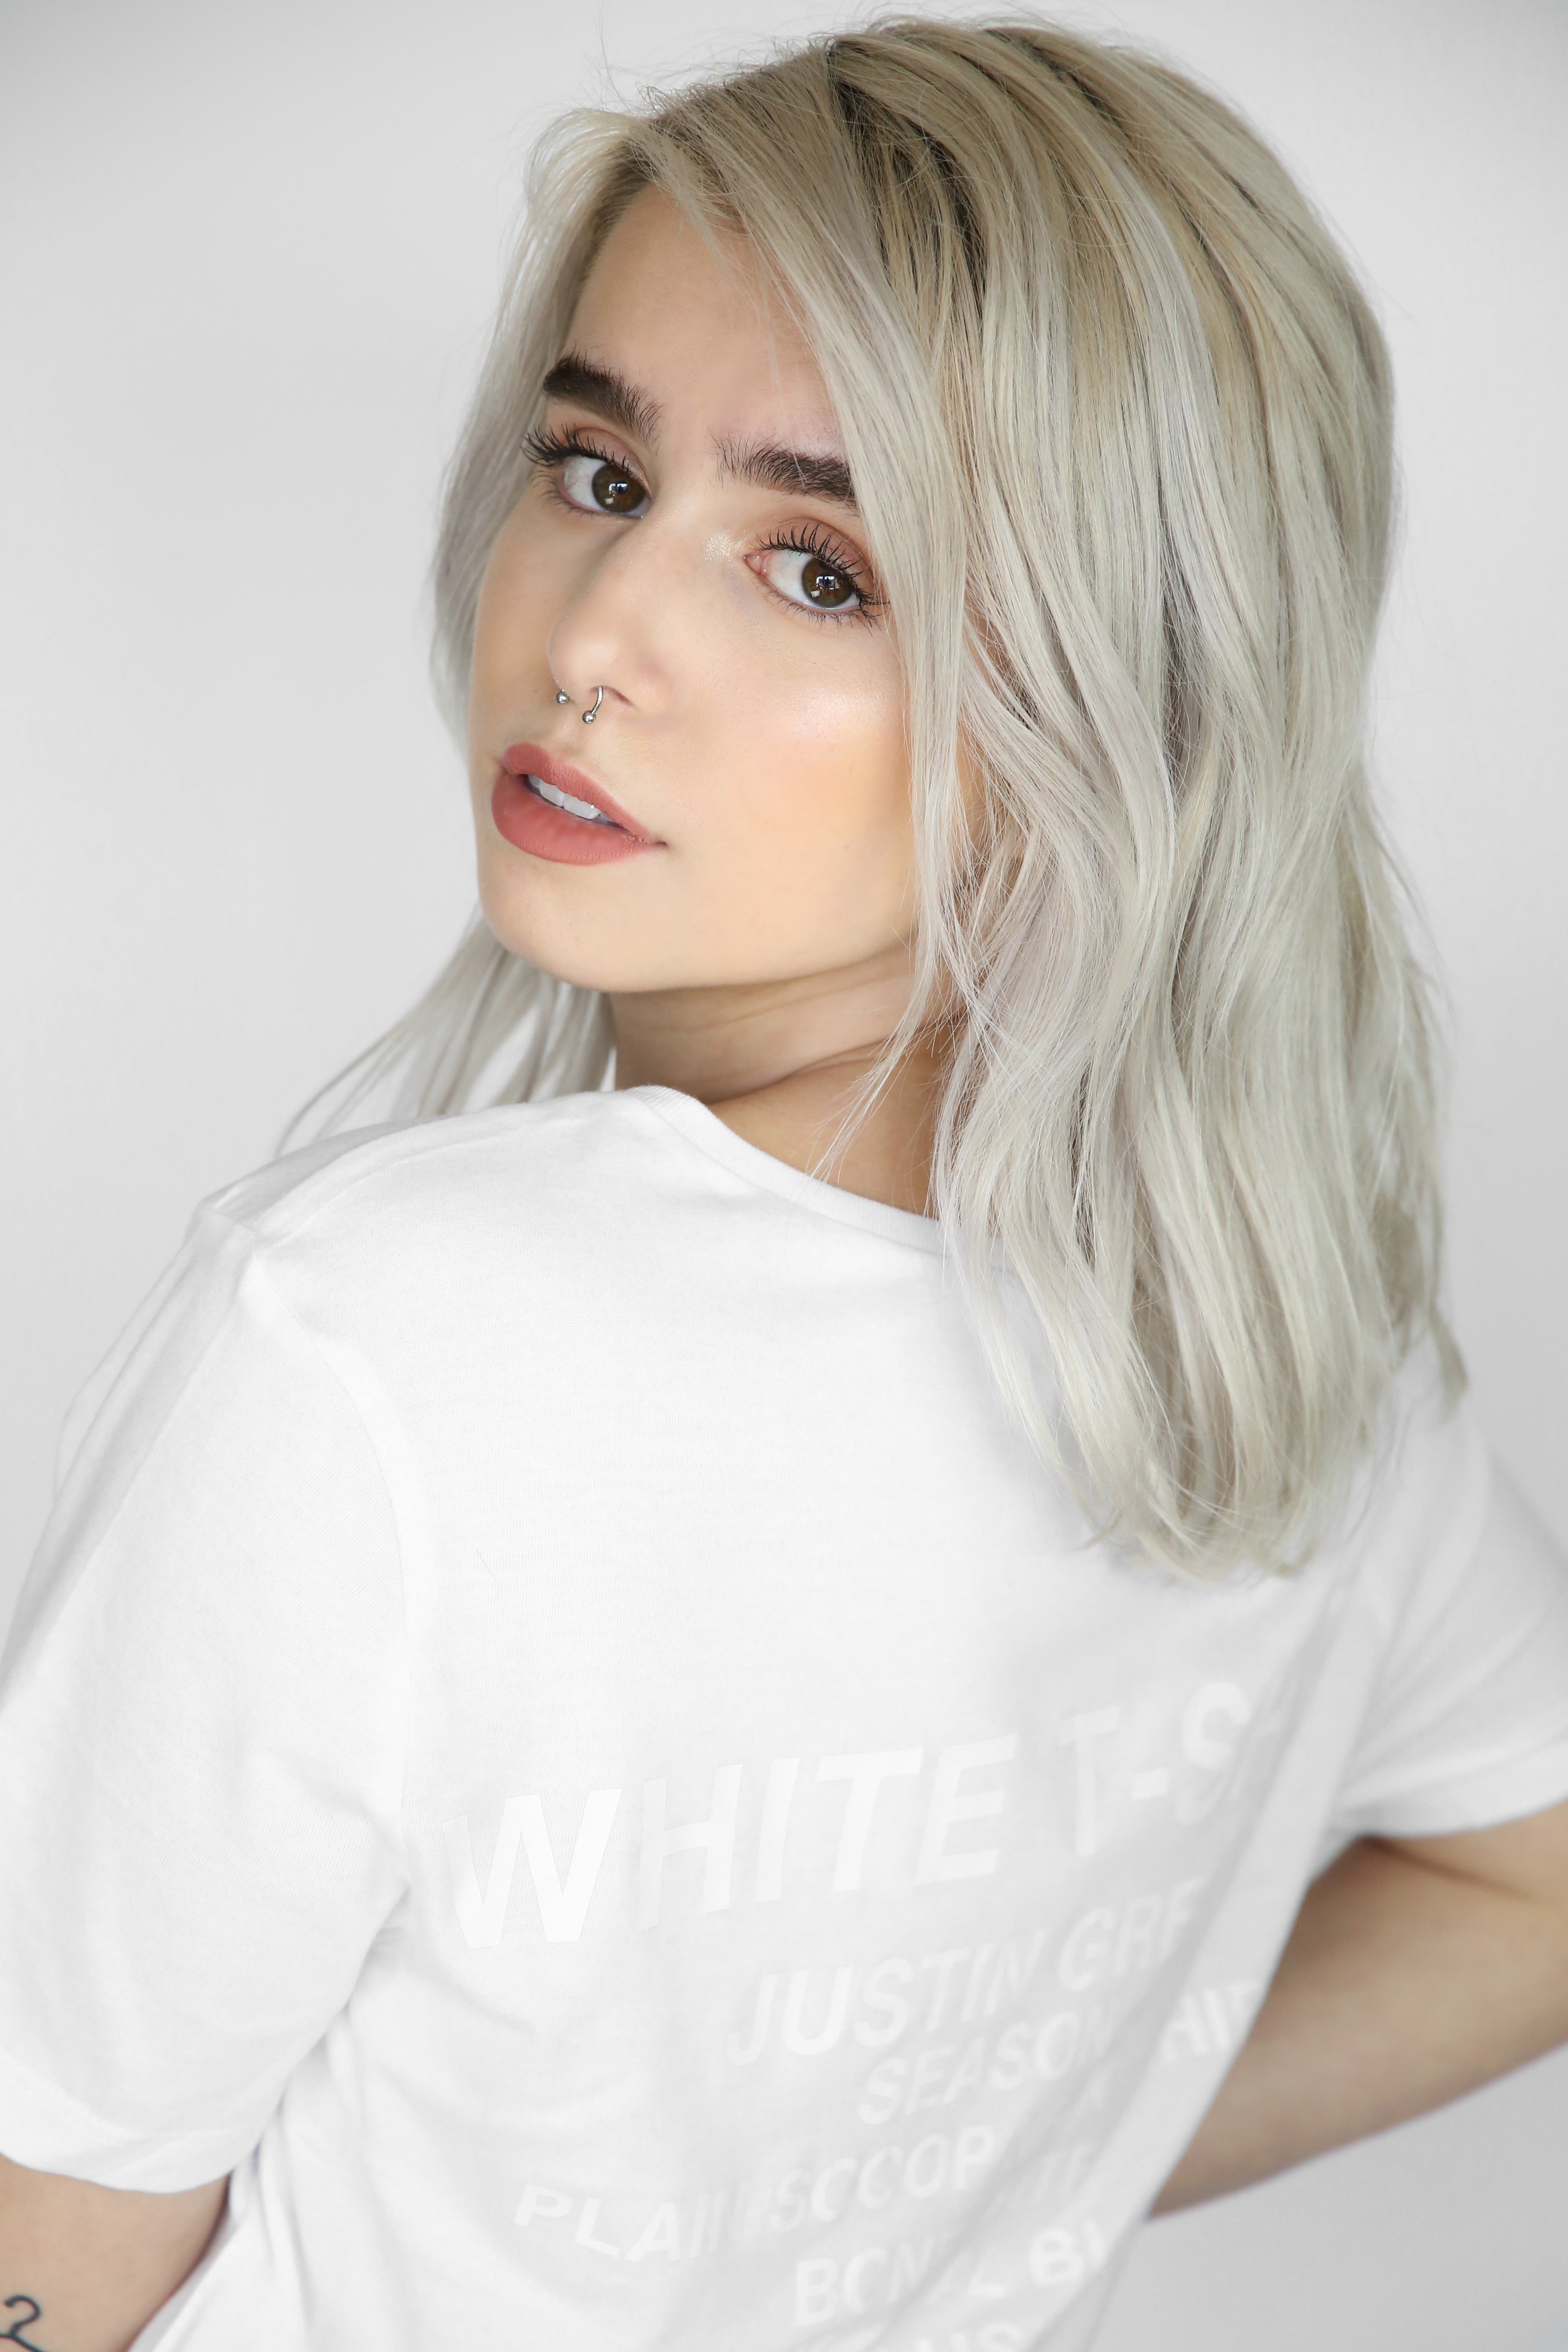 Plain White T-Shirt